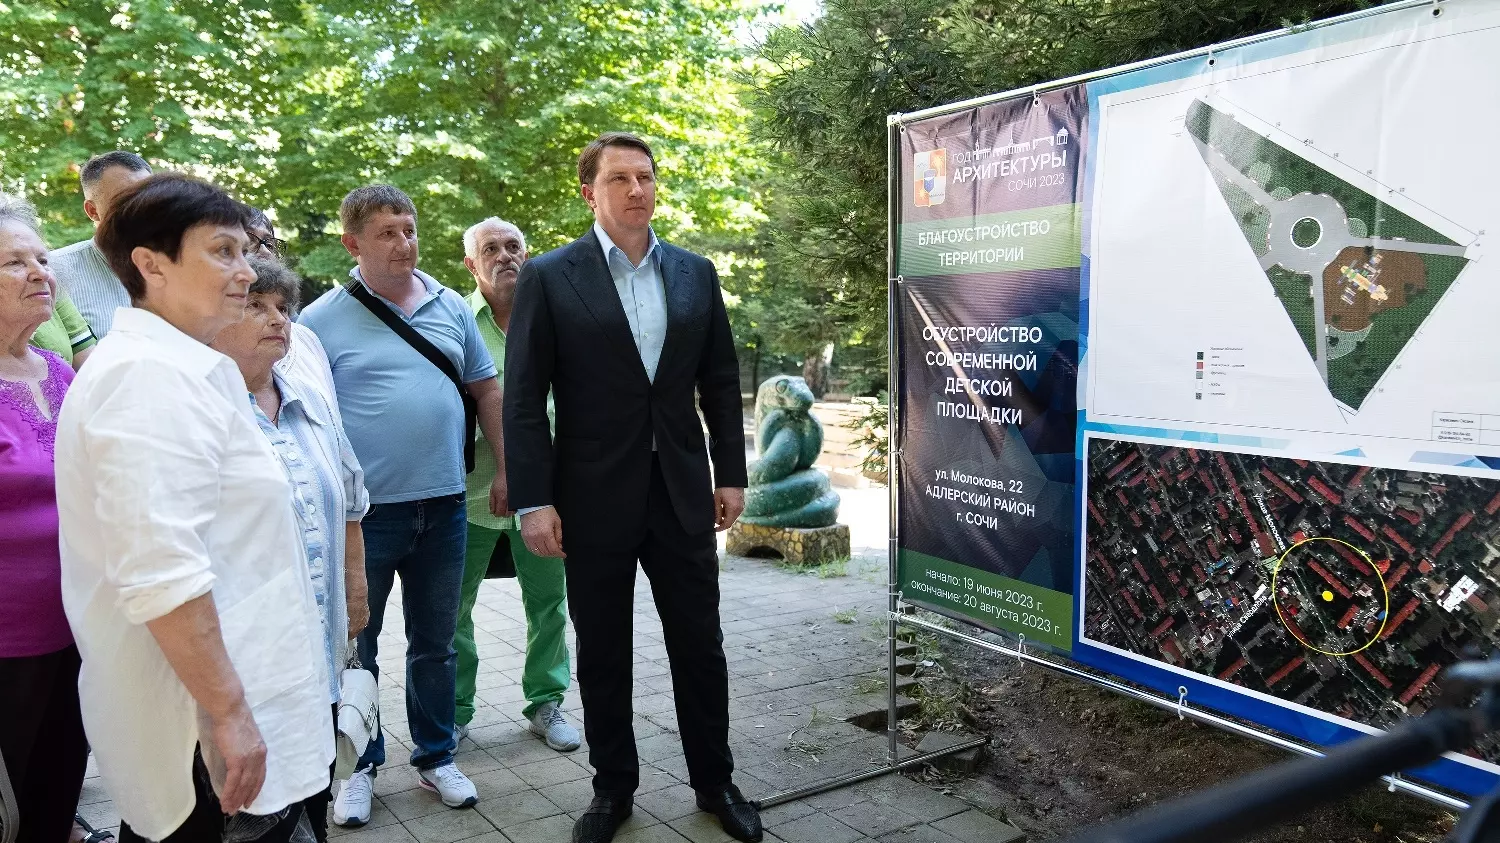 Мэр Сочи Алексей Копайгородский призвал жителей Сочи активнее участвовать в жизни города